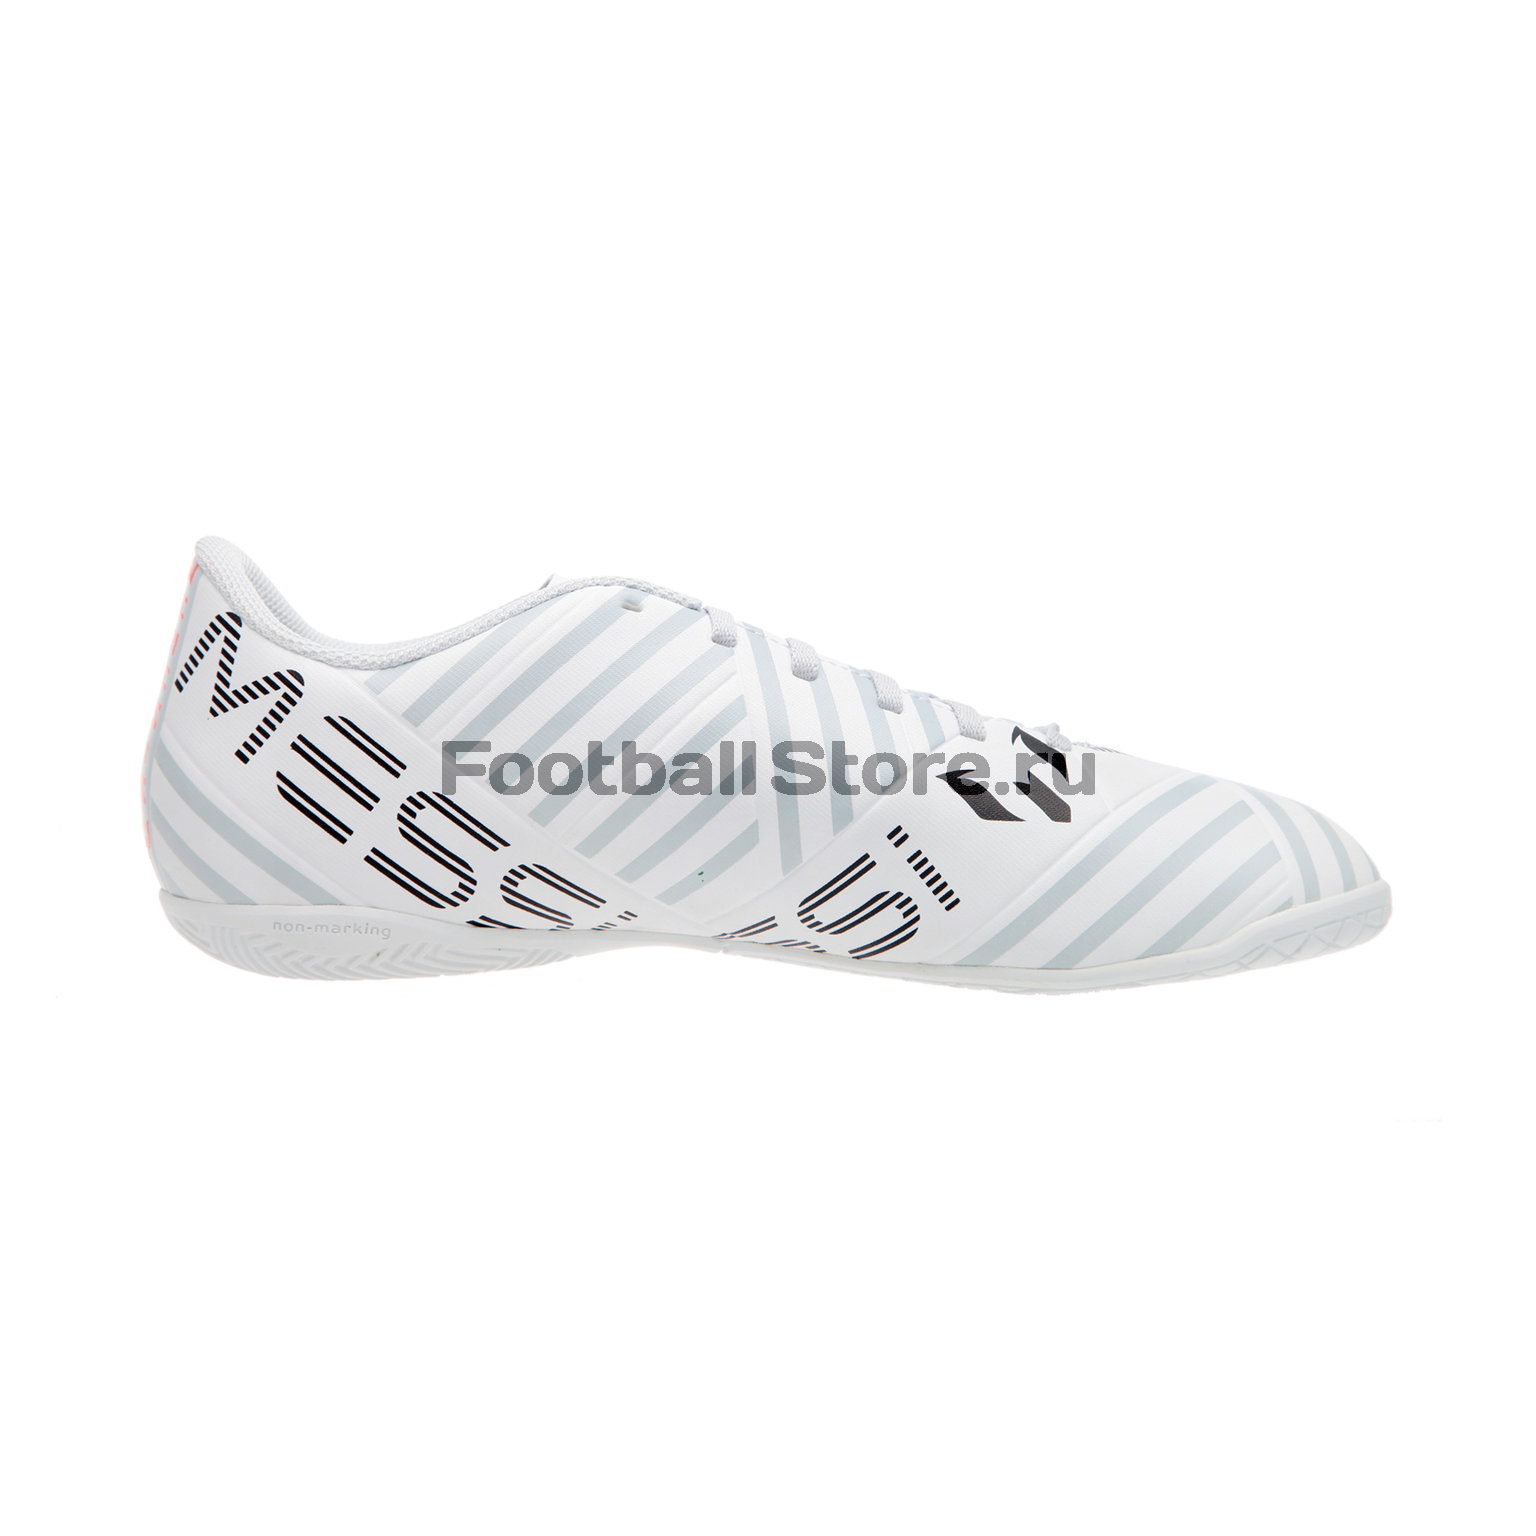 Обувь для зала Adidas Nemeziz Messi 17.4 IN S77203 